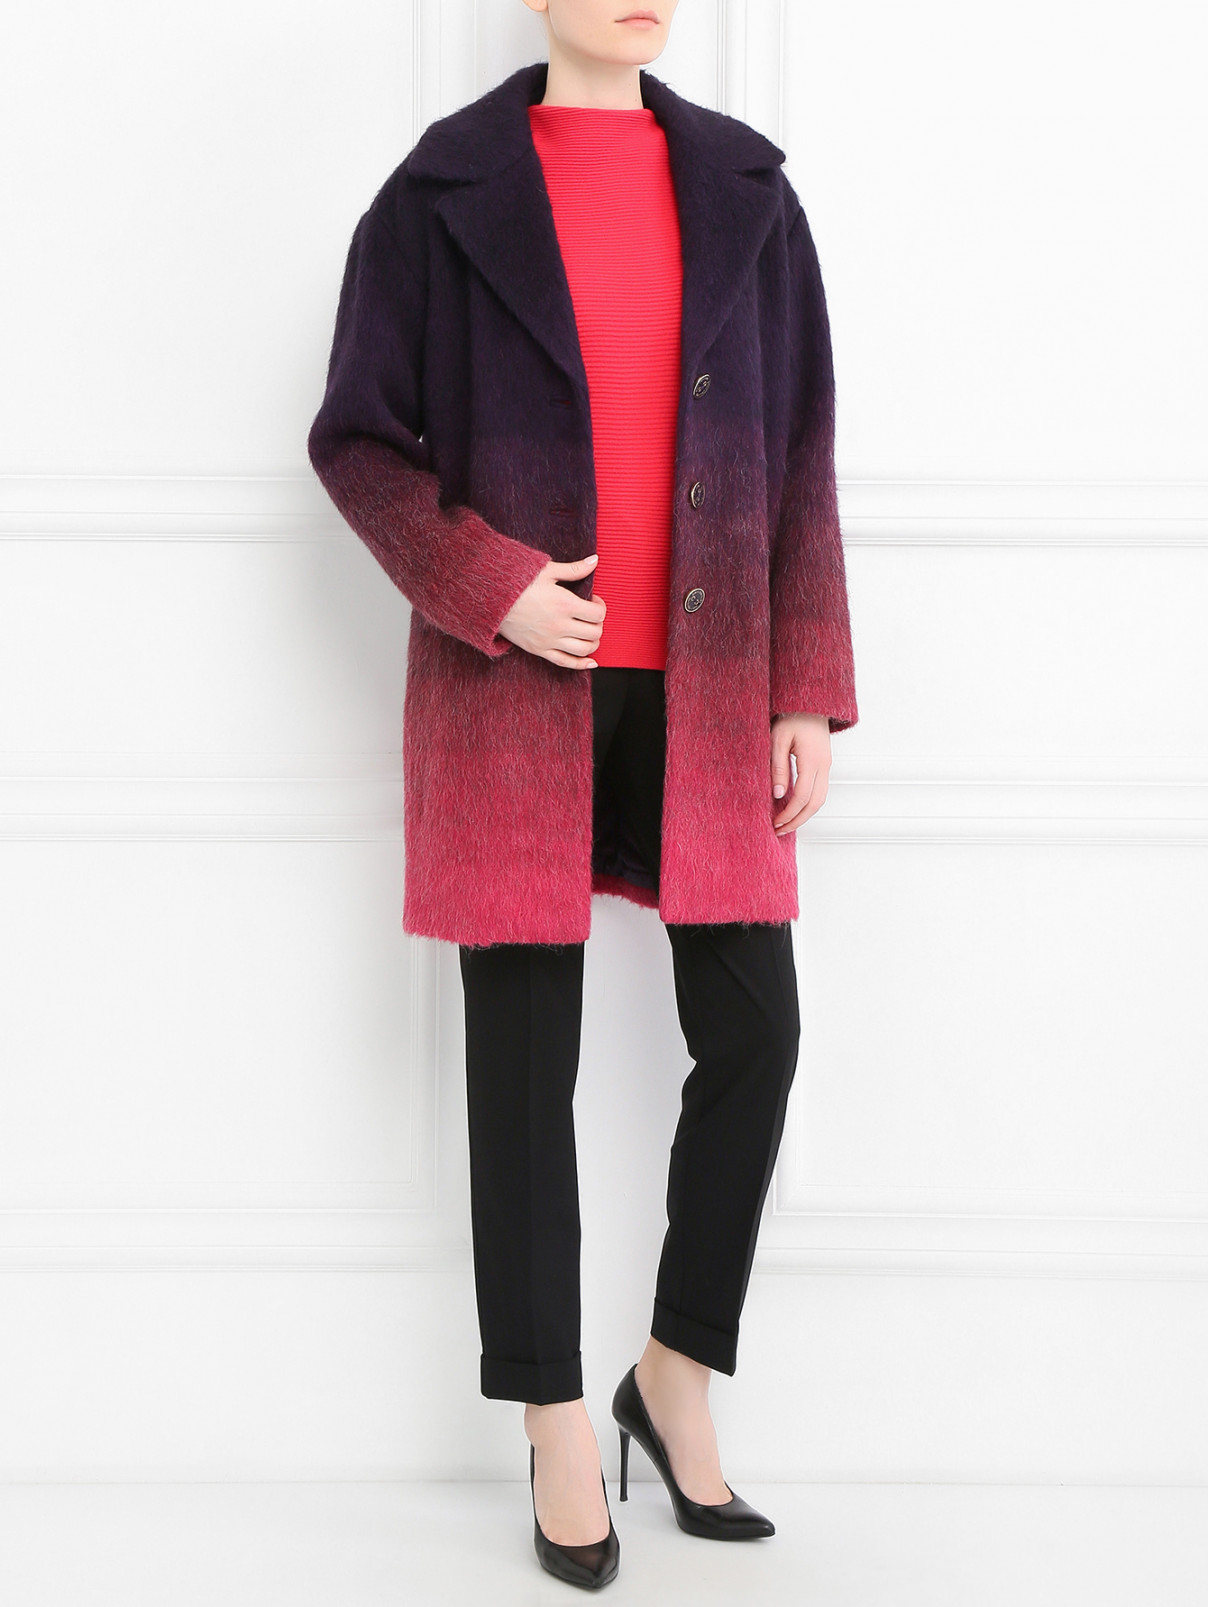 Однобортное пальто с контрастными пуговицами Juicy Couture  –  Модель Общий вид  – Цвет:  Мультиколор